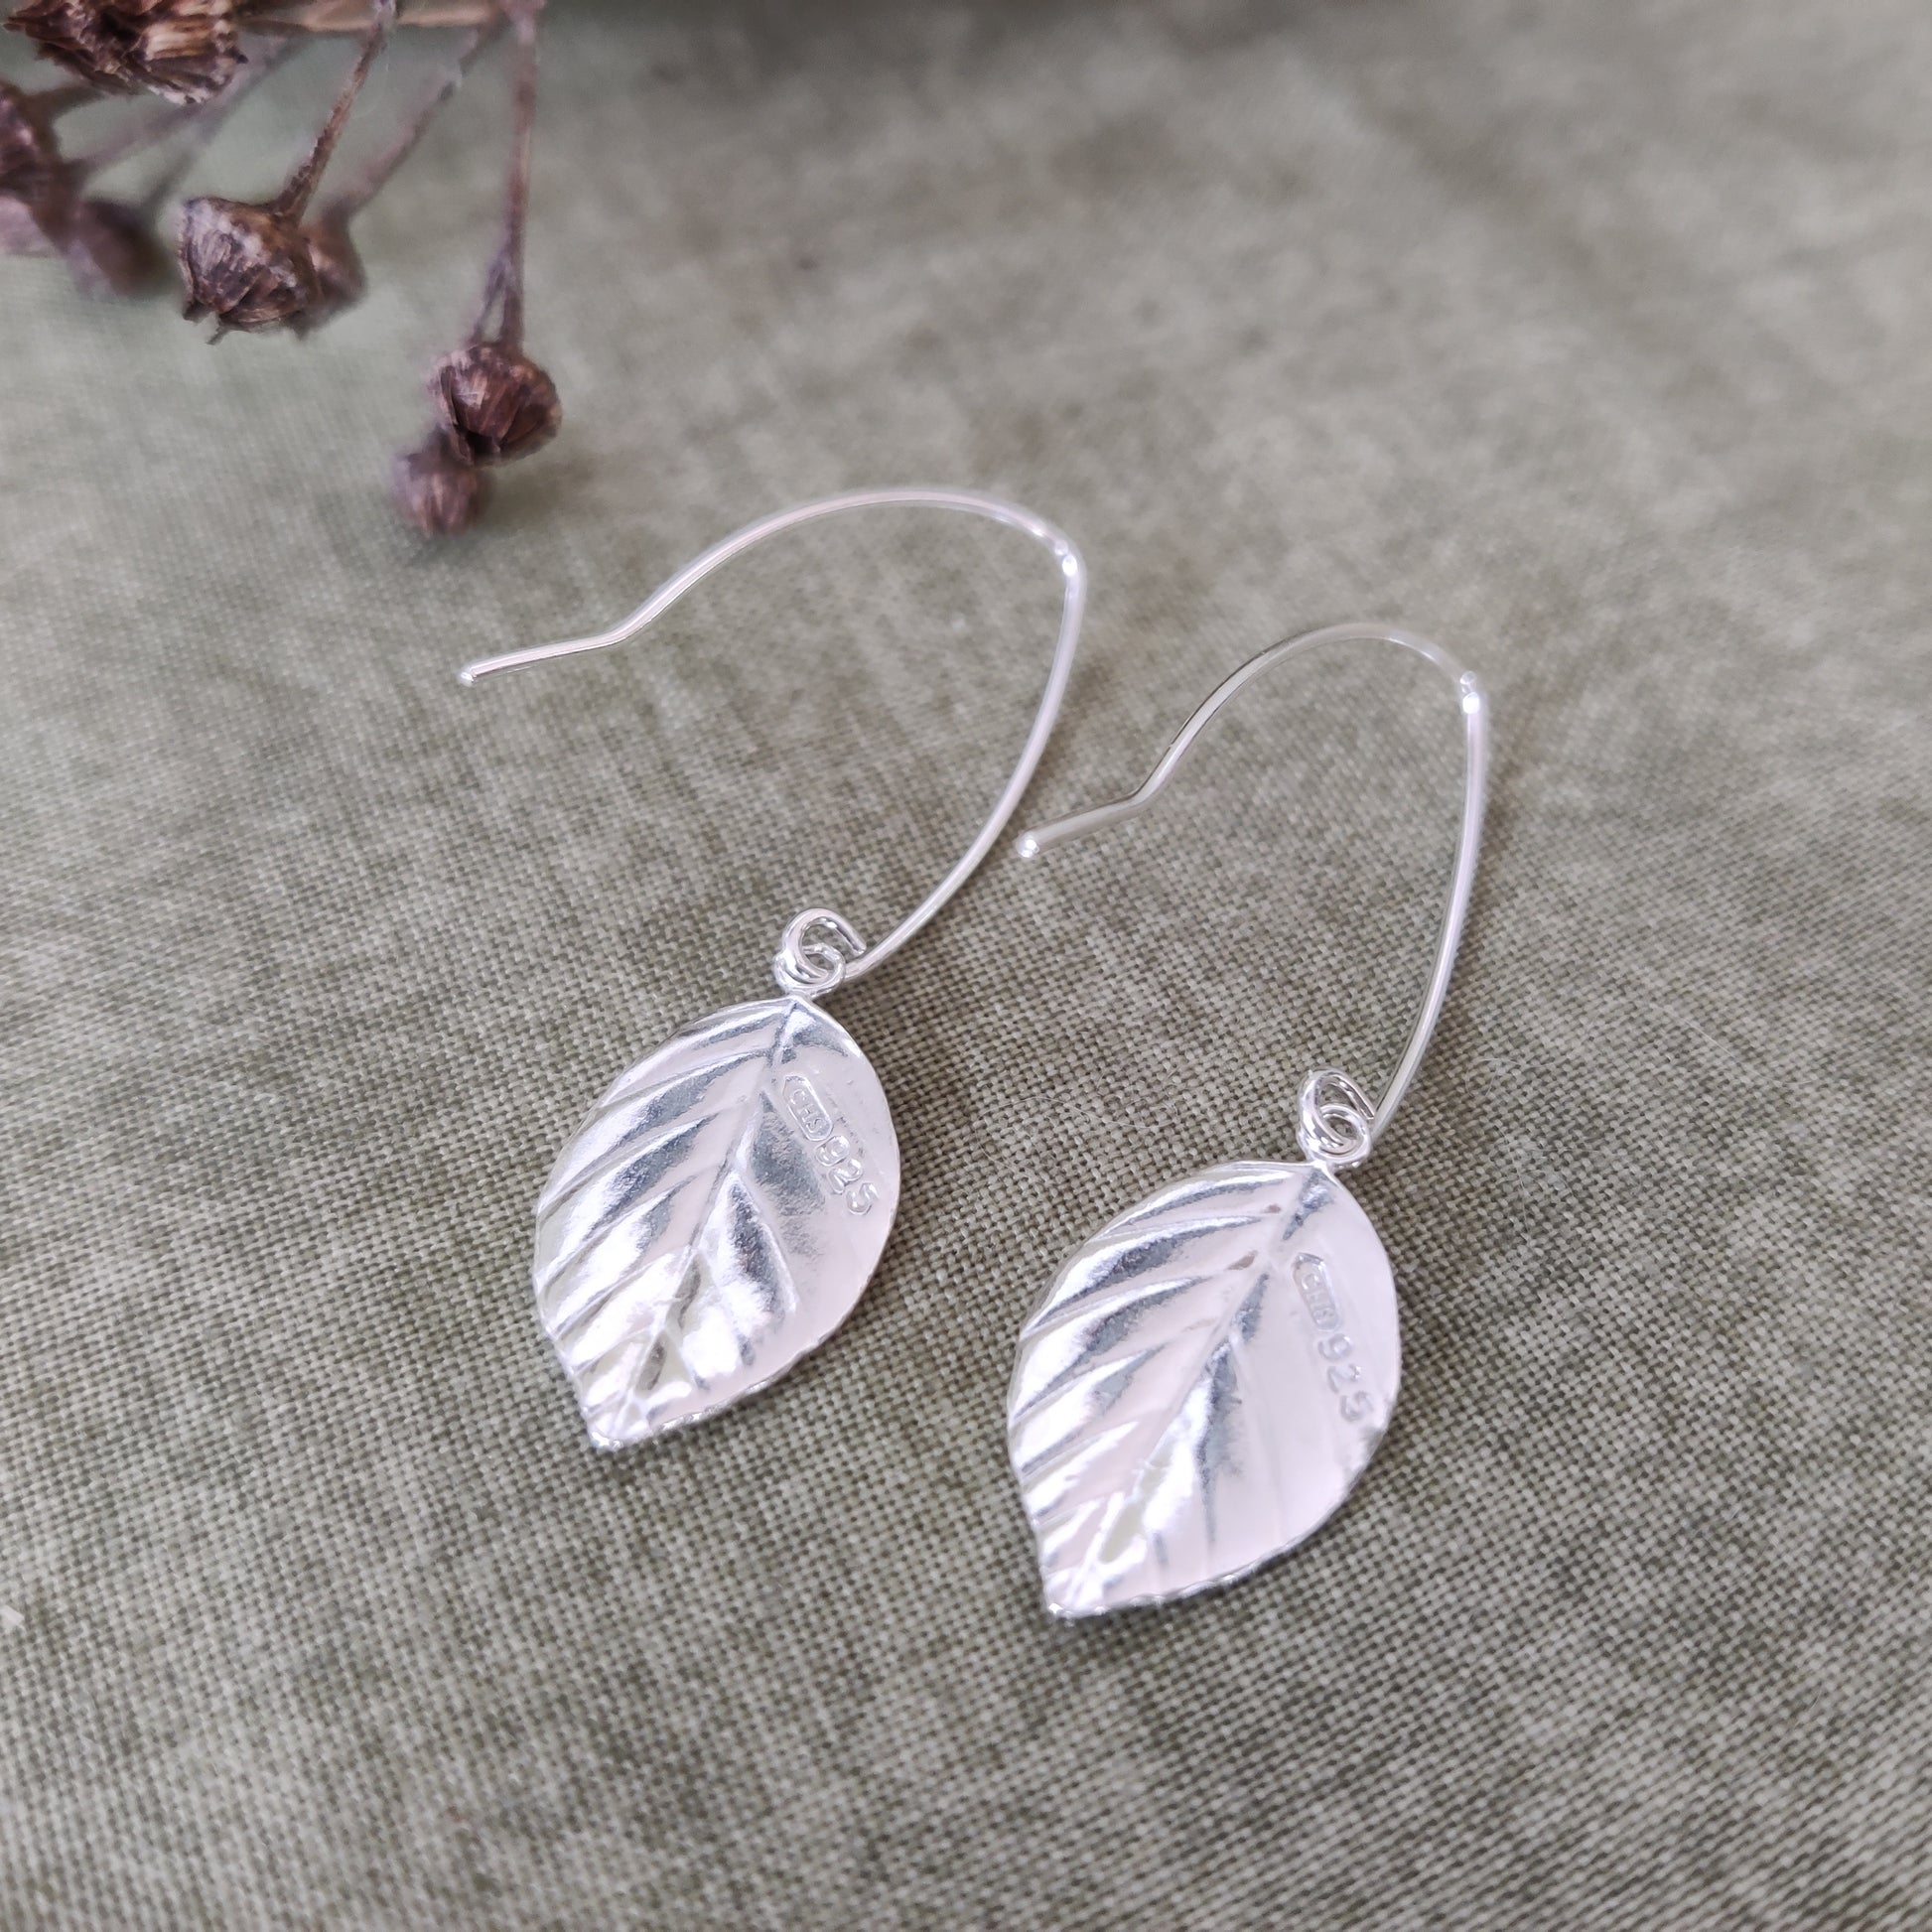 925 silver leaf earrings by Notion Jewellery